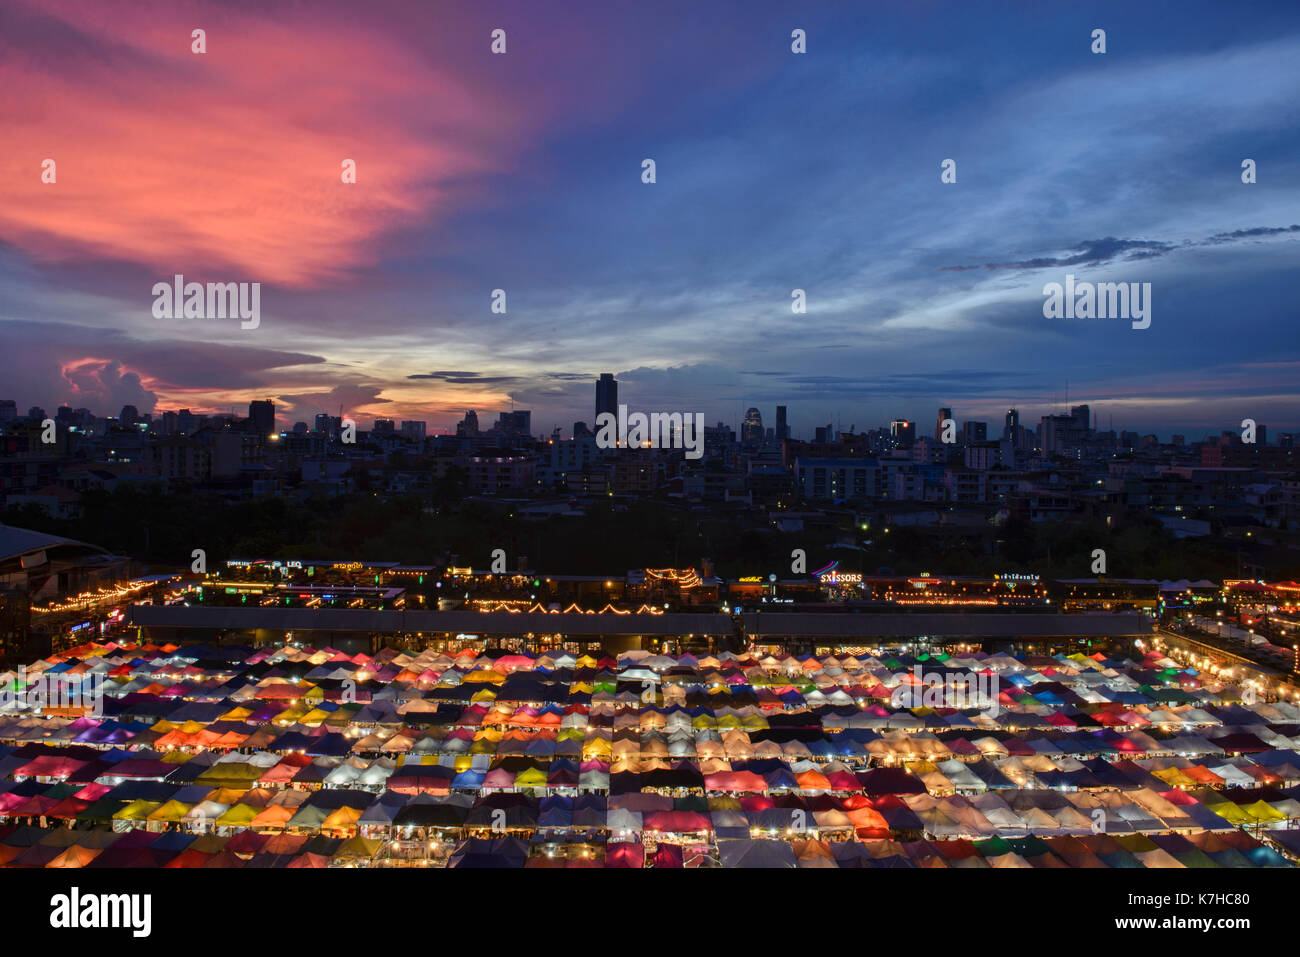 La colorée ratchada rot fai marché train au coucher du soleil, Bangkok, Thaïlande Banque D'Images